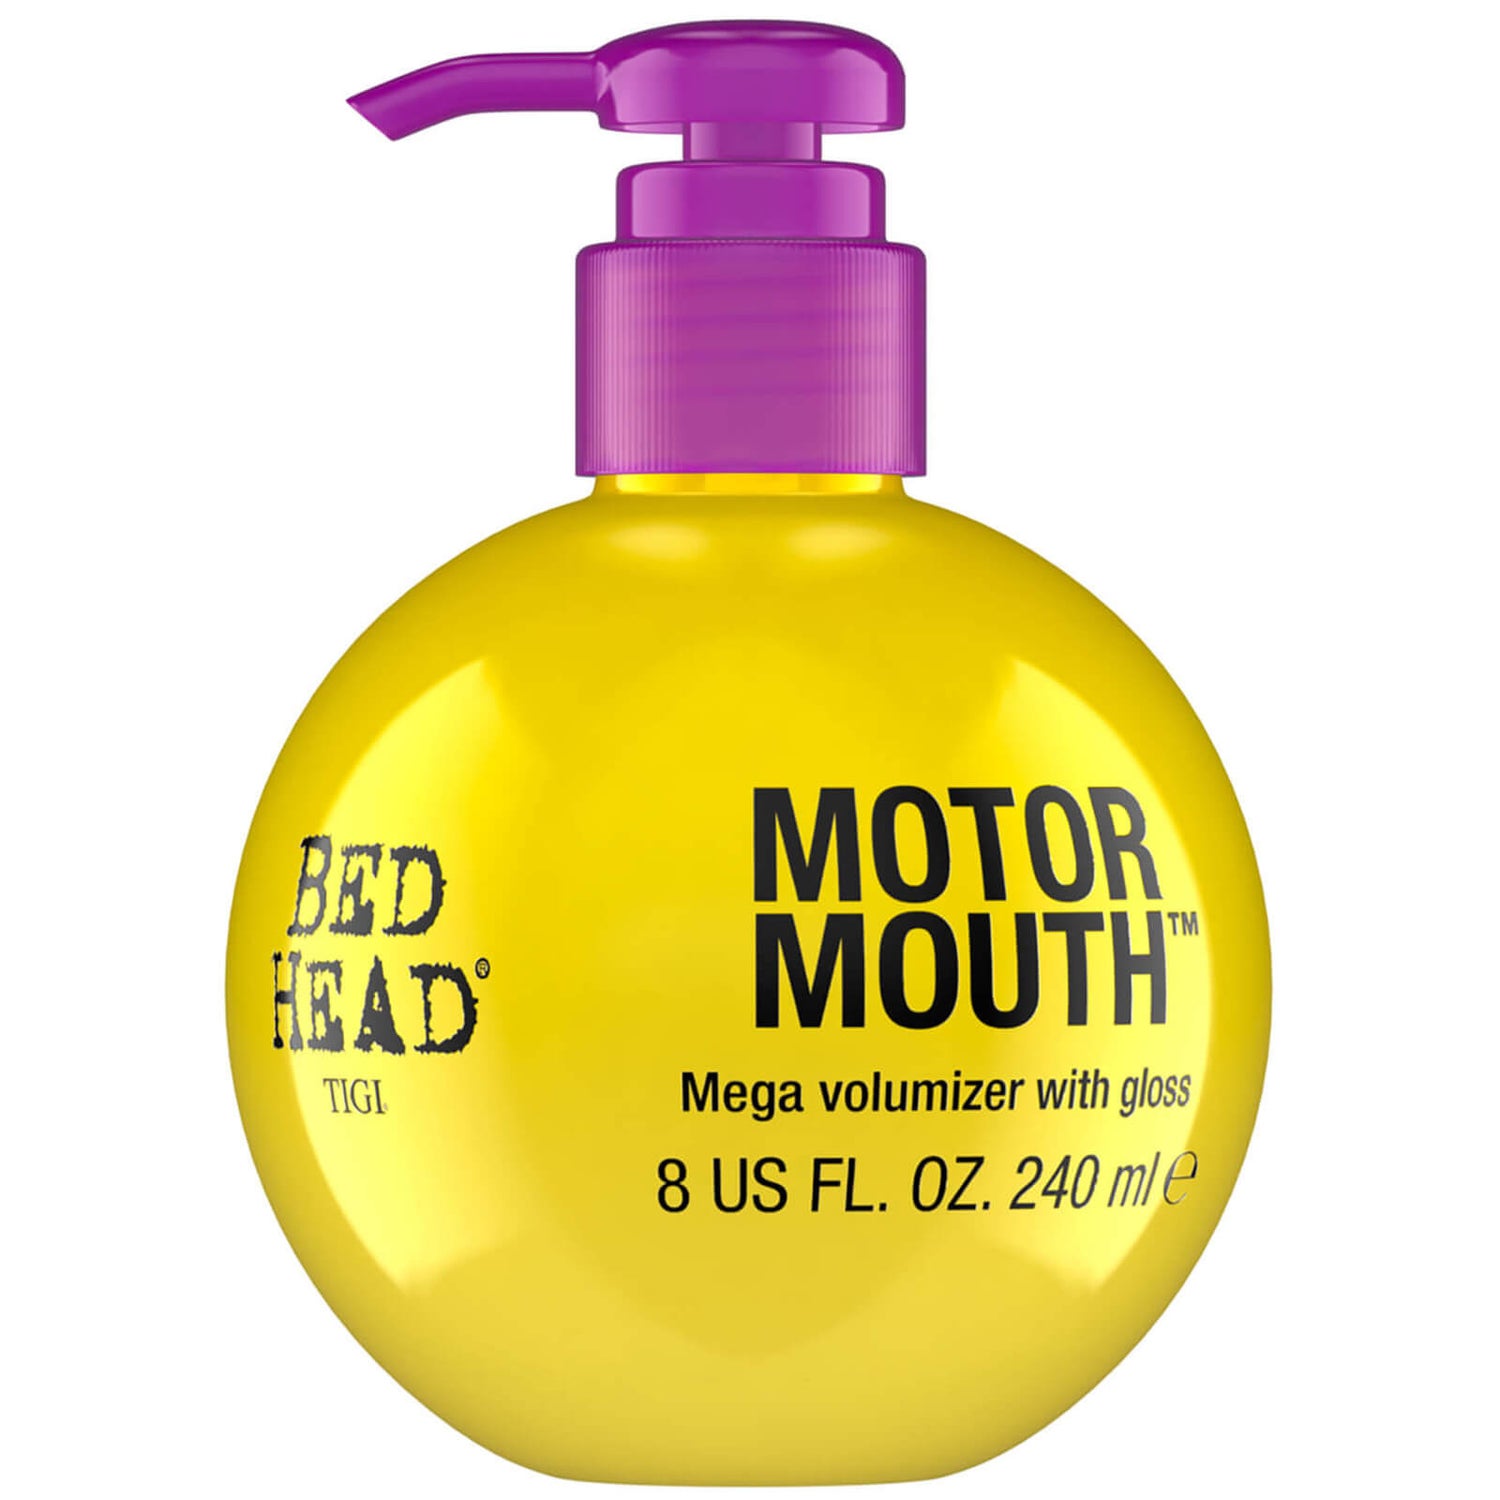 Mega Volumizador Motor Mouth da TIGI Bed Head (240 ml)